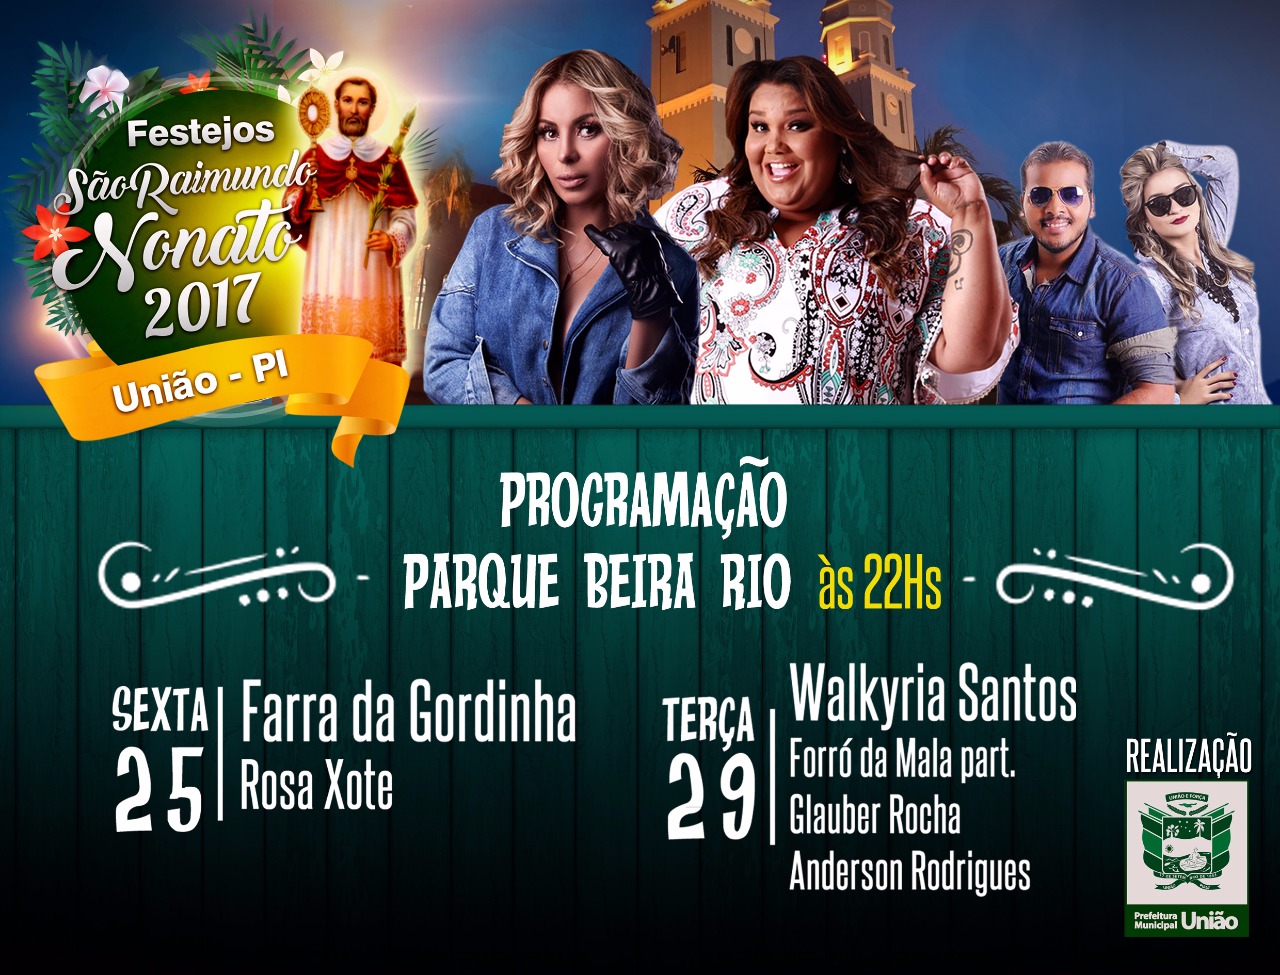 Programação dos Festejos de União Parque Beira Rio